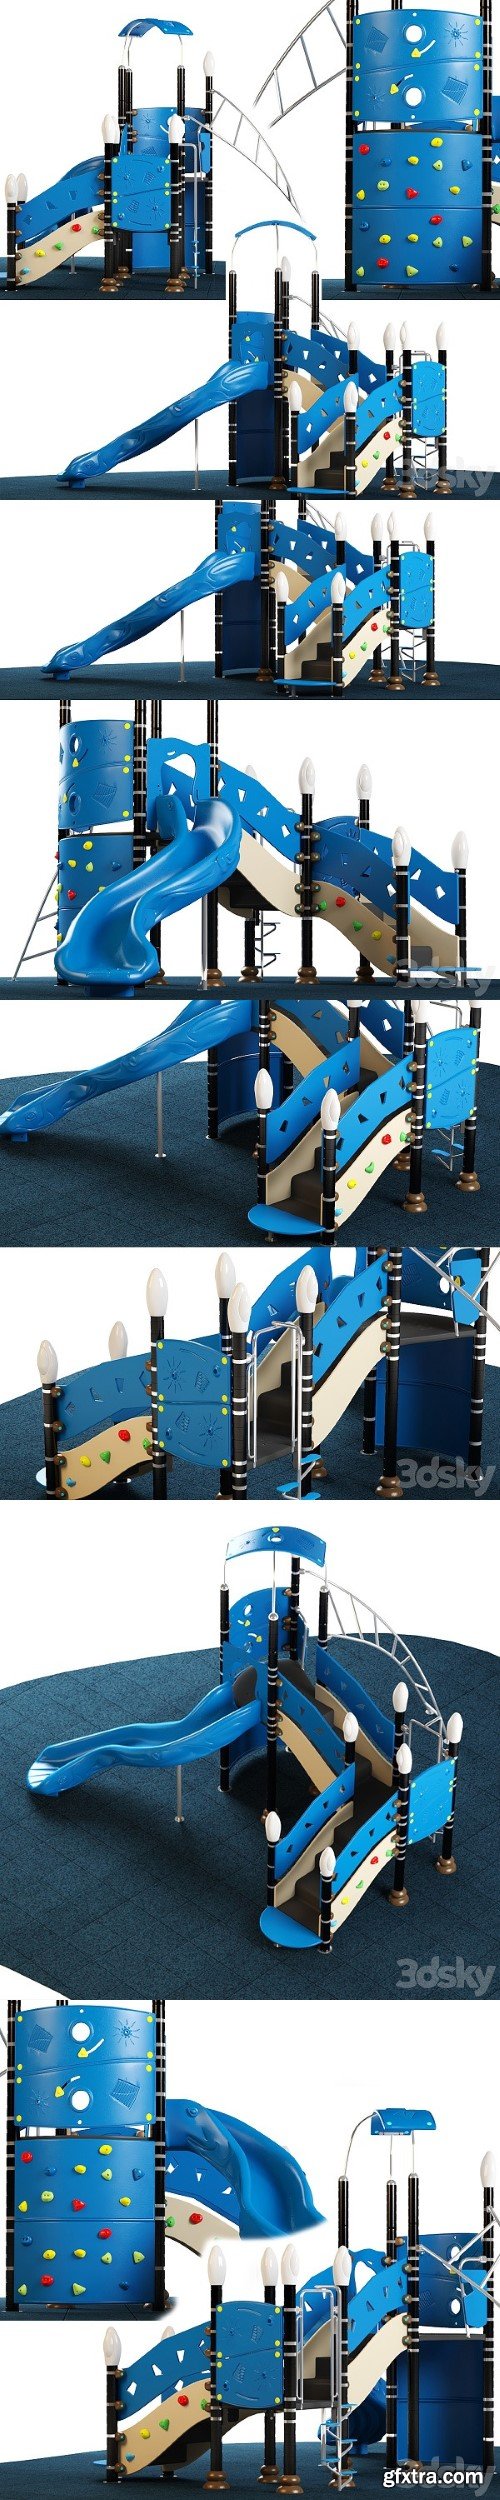 Kids playground Equipment With Slide Climbing 03